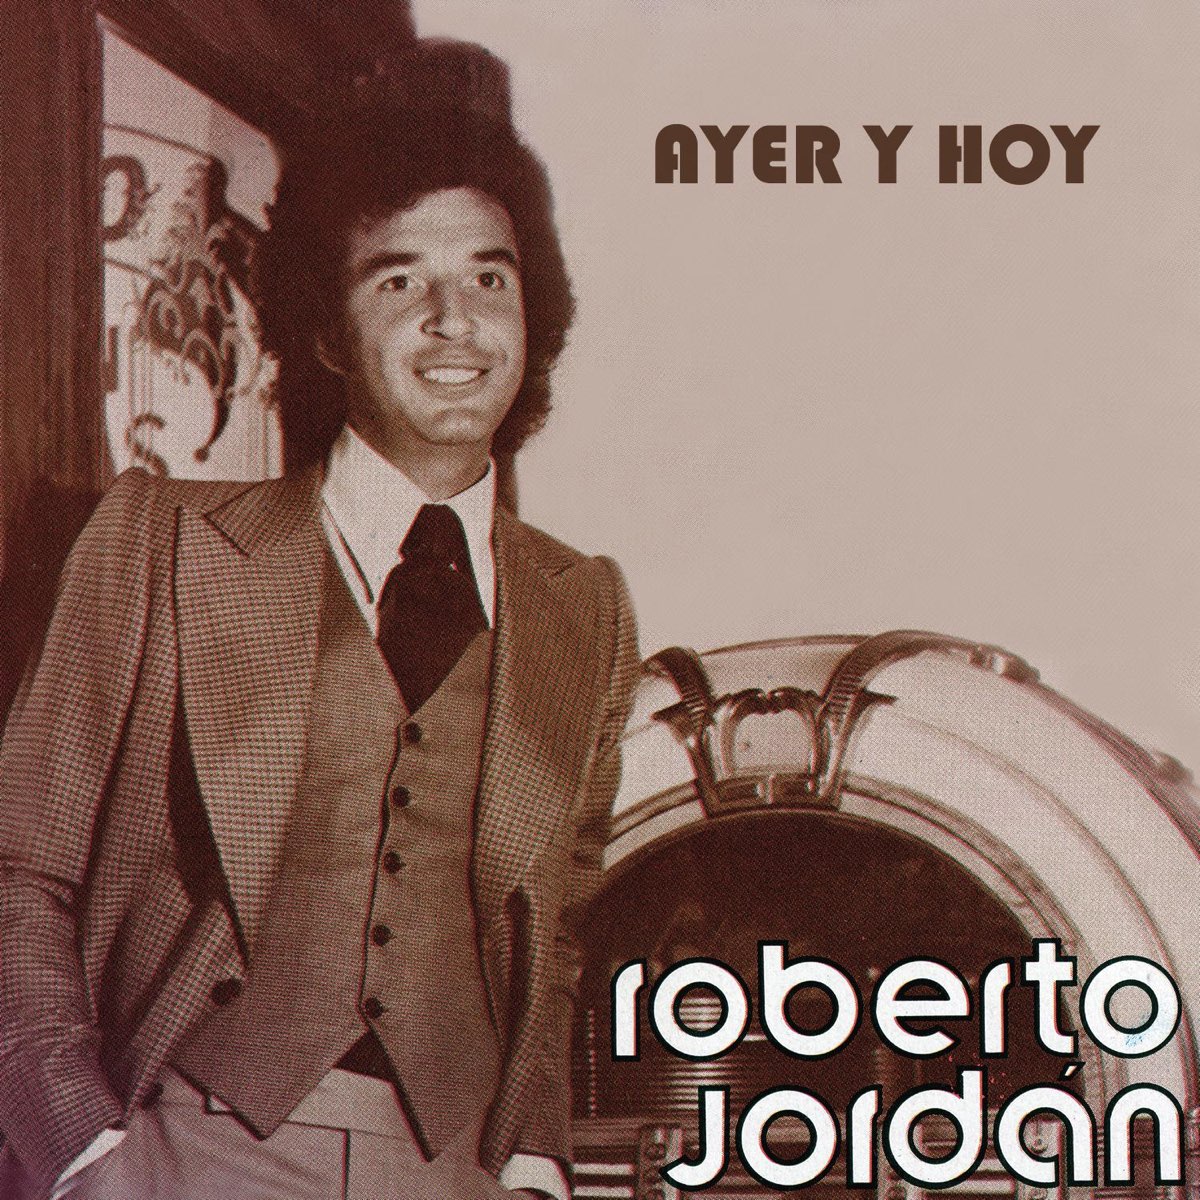 Ayer y Hoy - Roberto Jordán par Roberto Jordan sur Apple Music